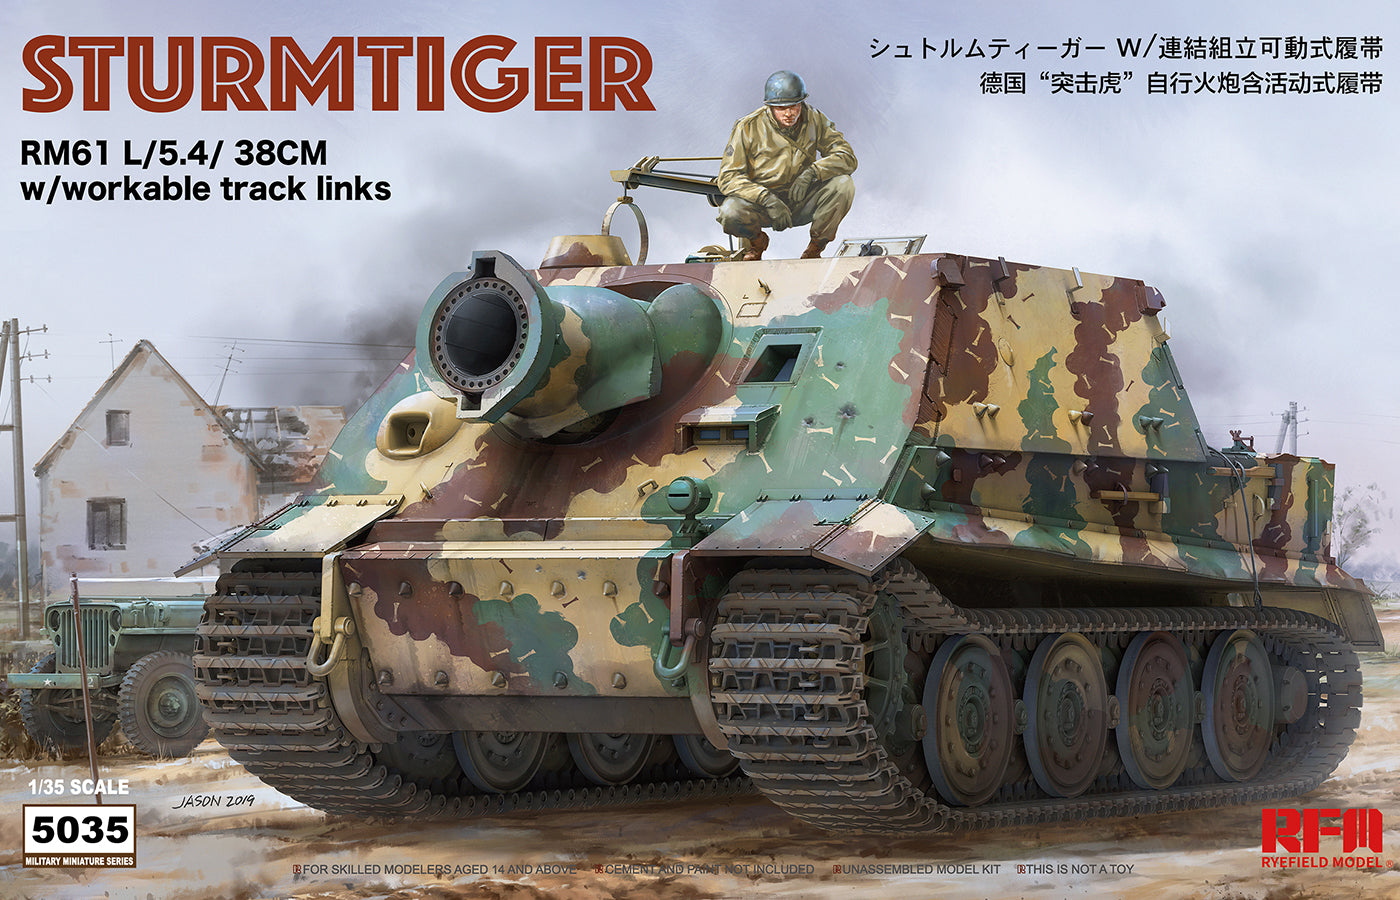 RM5035 - WWII RM61 L/5.4/38cm "Sturmmorser" Tiger